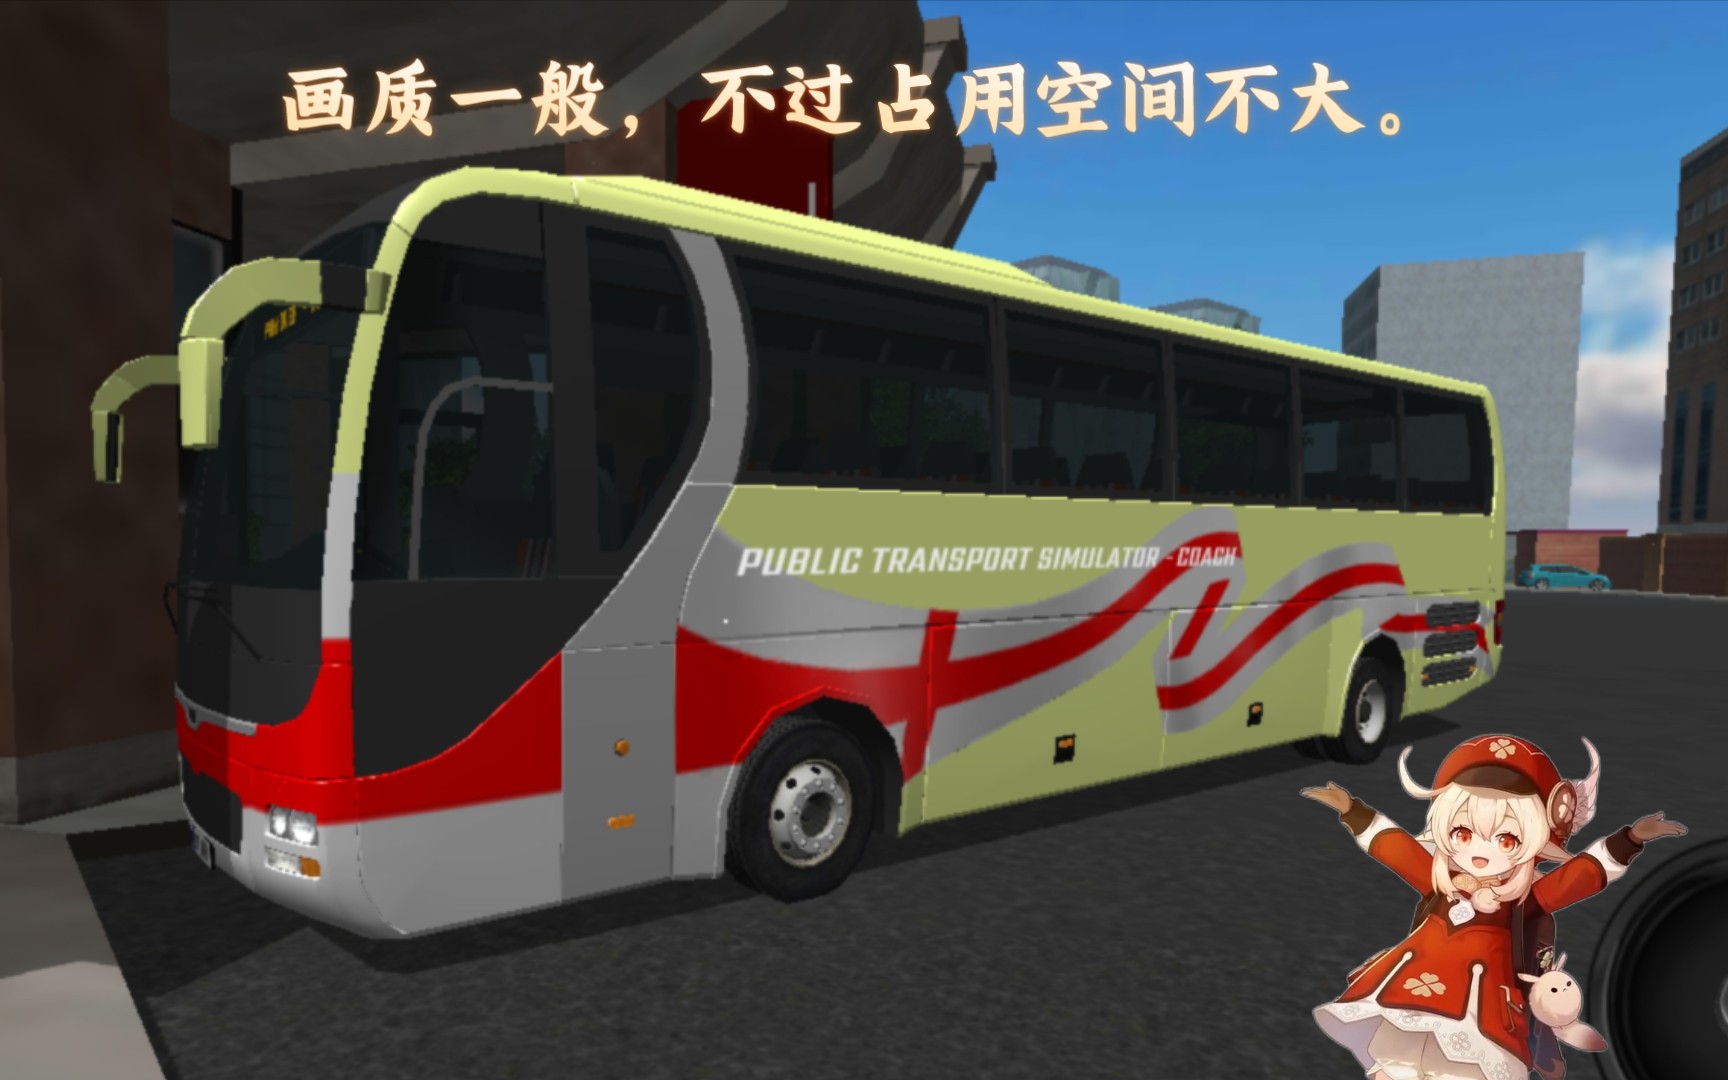 公共汽车模拟器（长途客车篇）：画质一般的长途客车游戏，但占用空间不大。